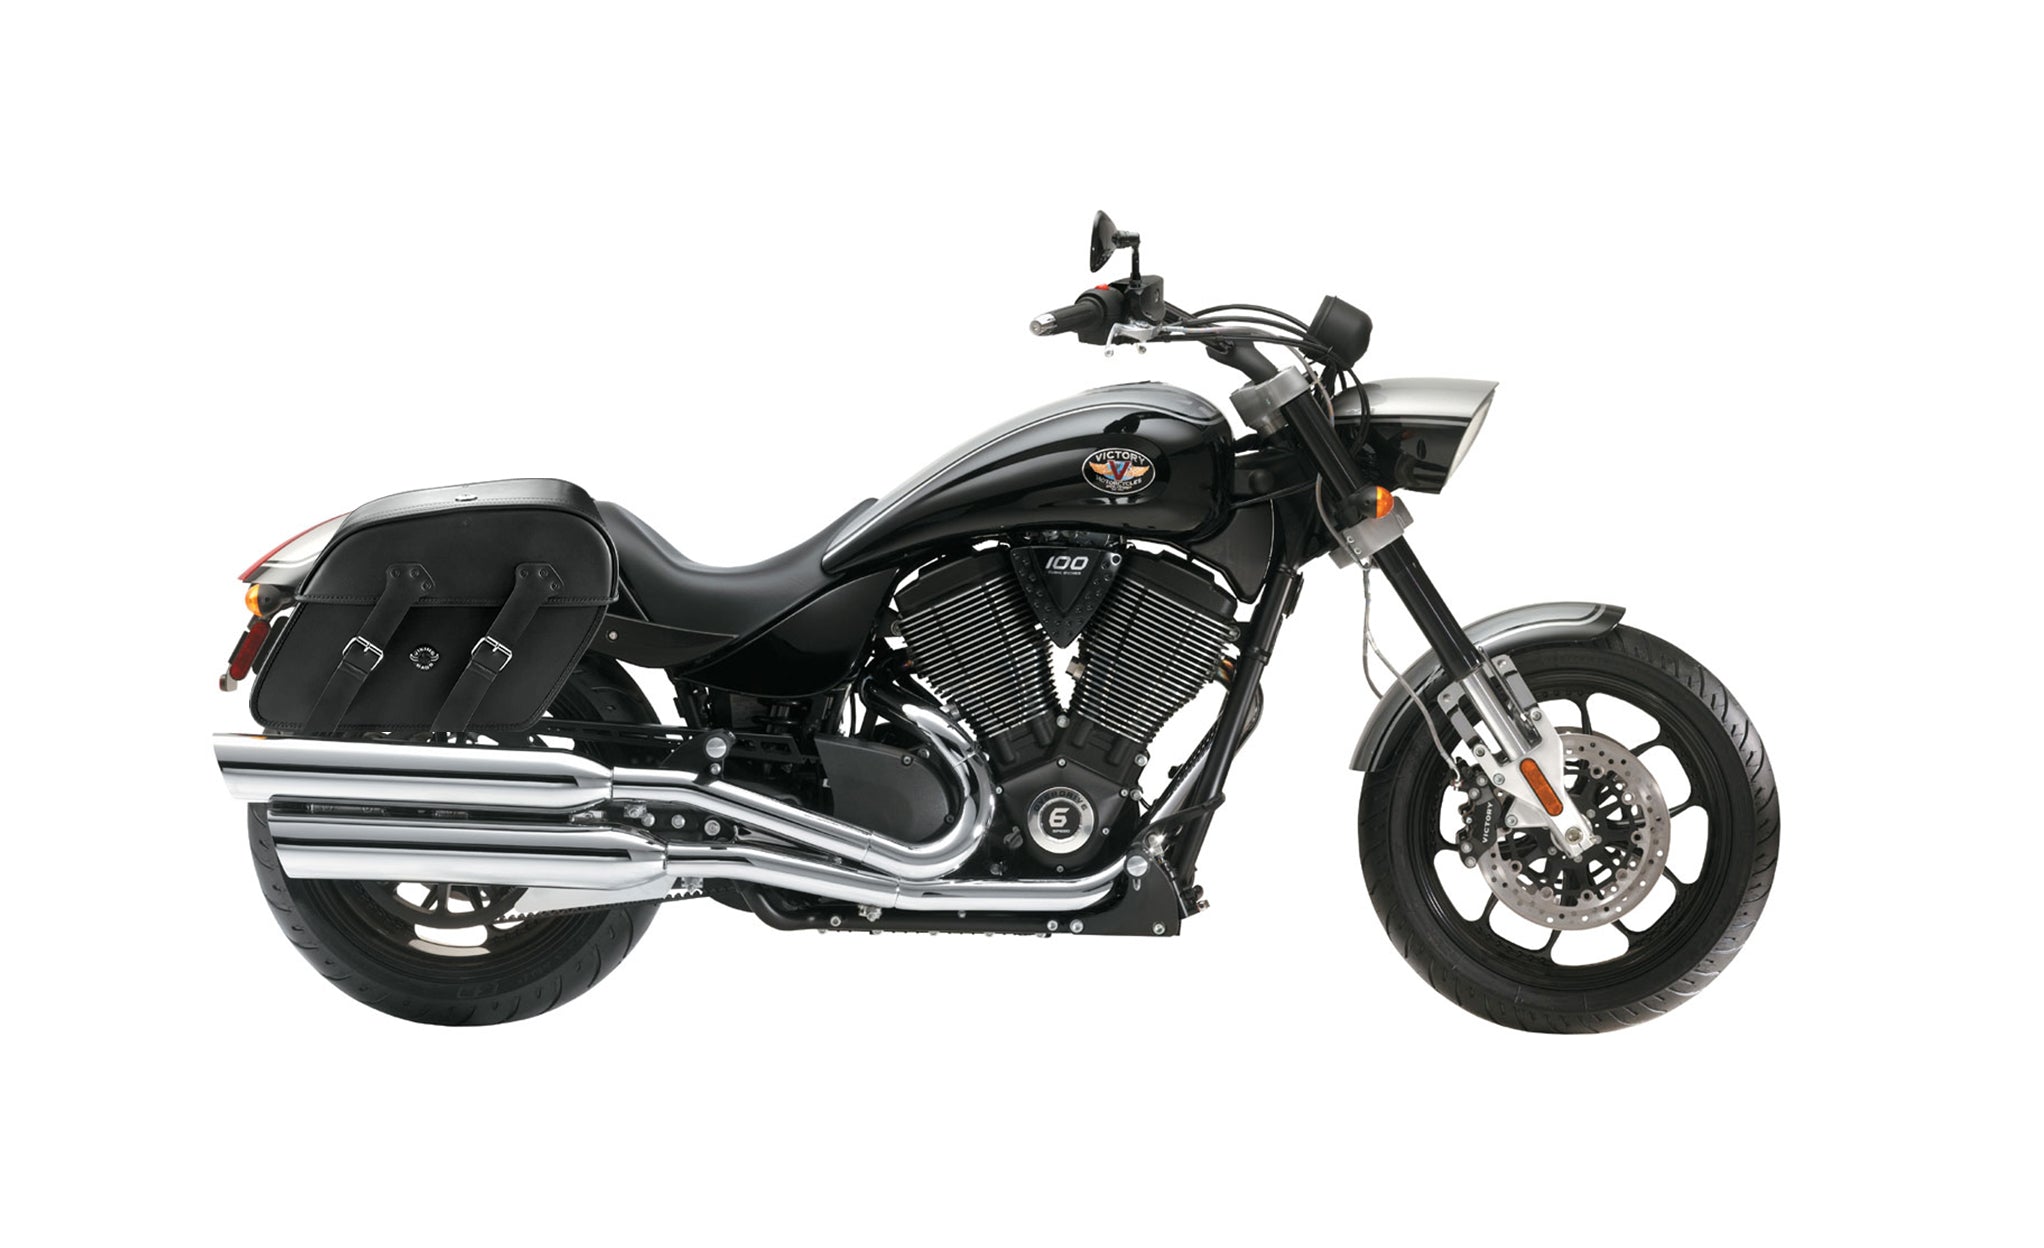 Viking Raven Large Victory Hammer Motorcycle Leather Saddlebags on Bike Photo @expand